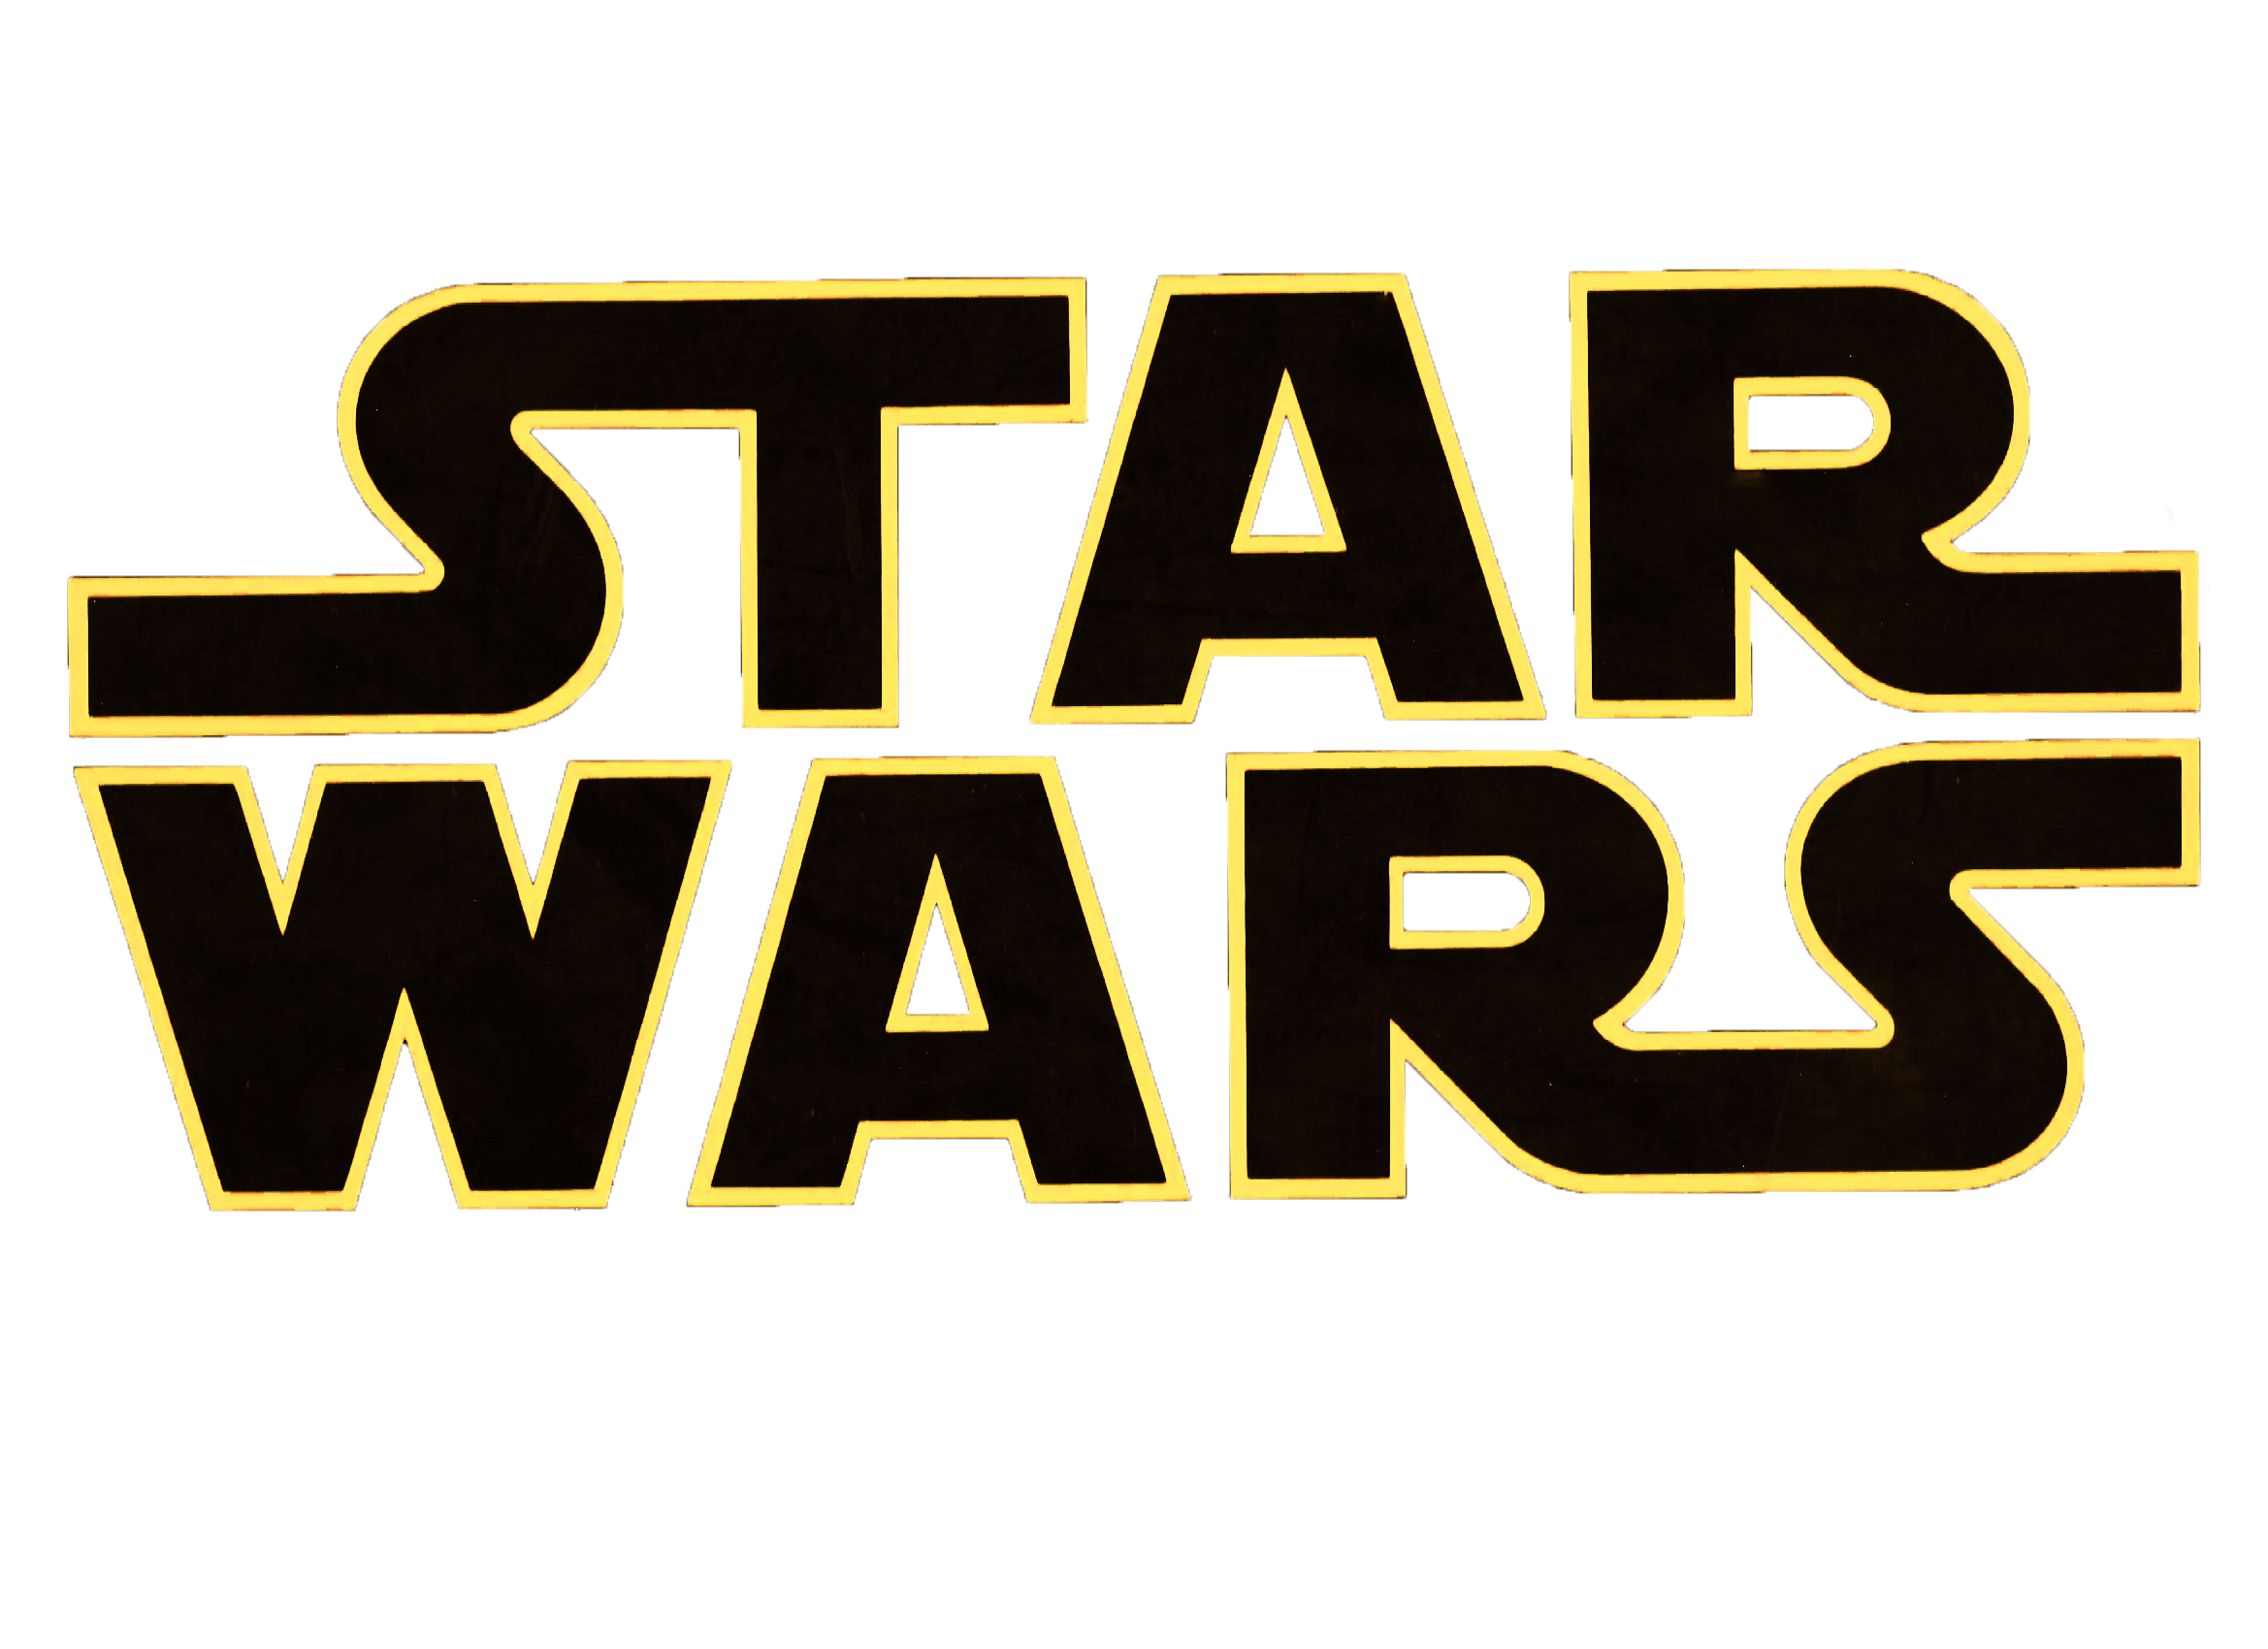 Transparent Star Wars Logo - KibrisPDR